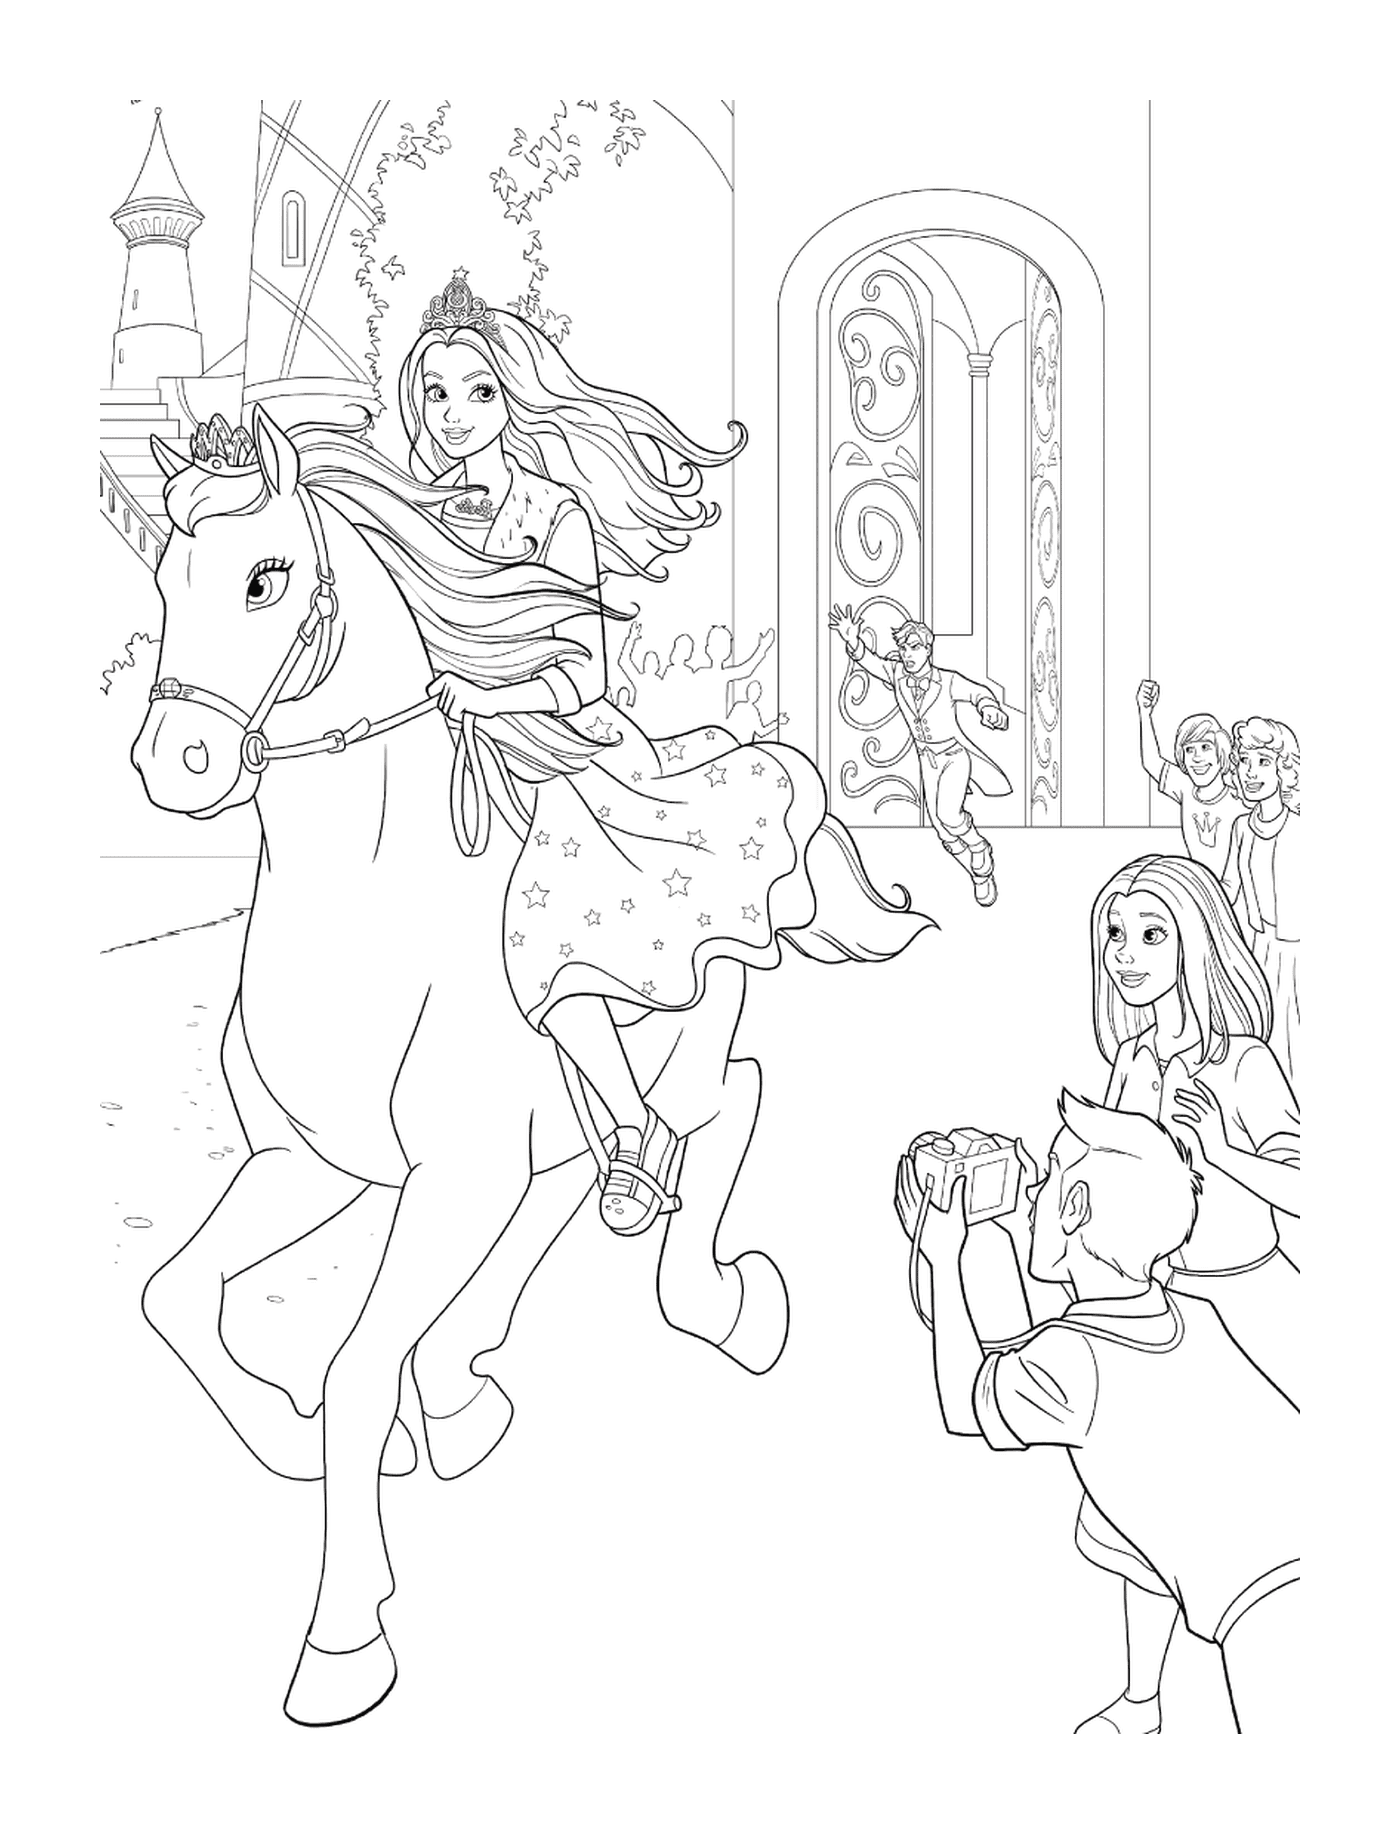  A girl riding a white horse 